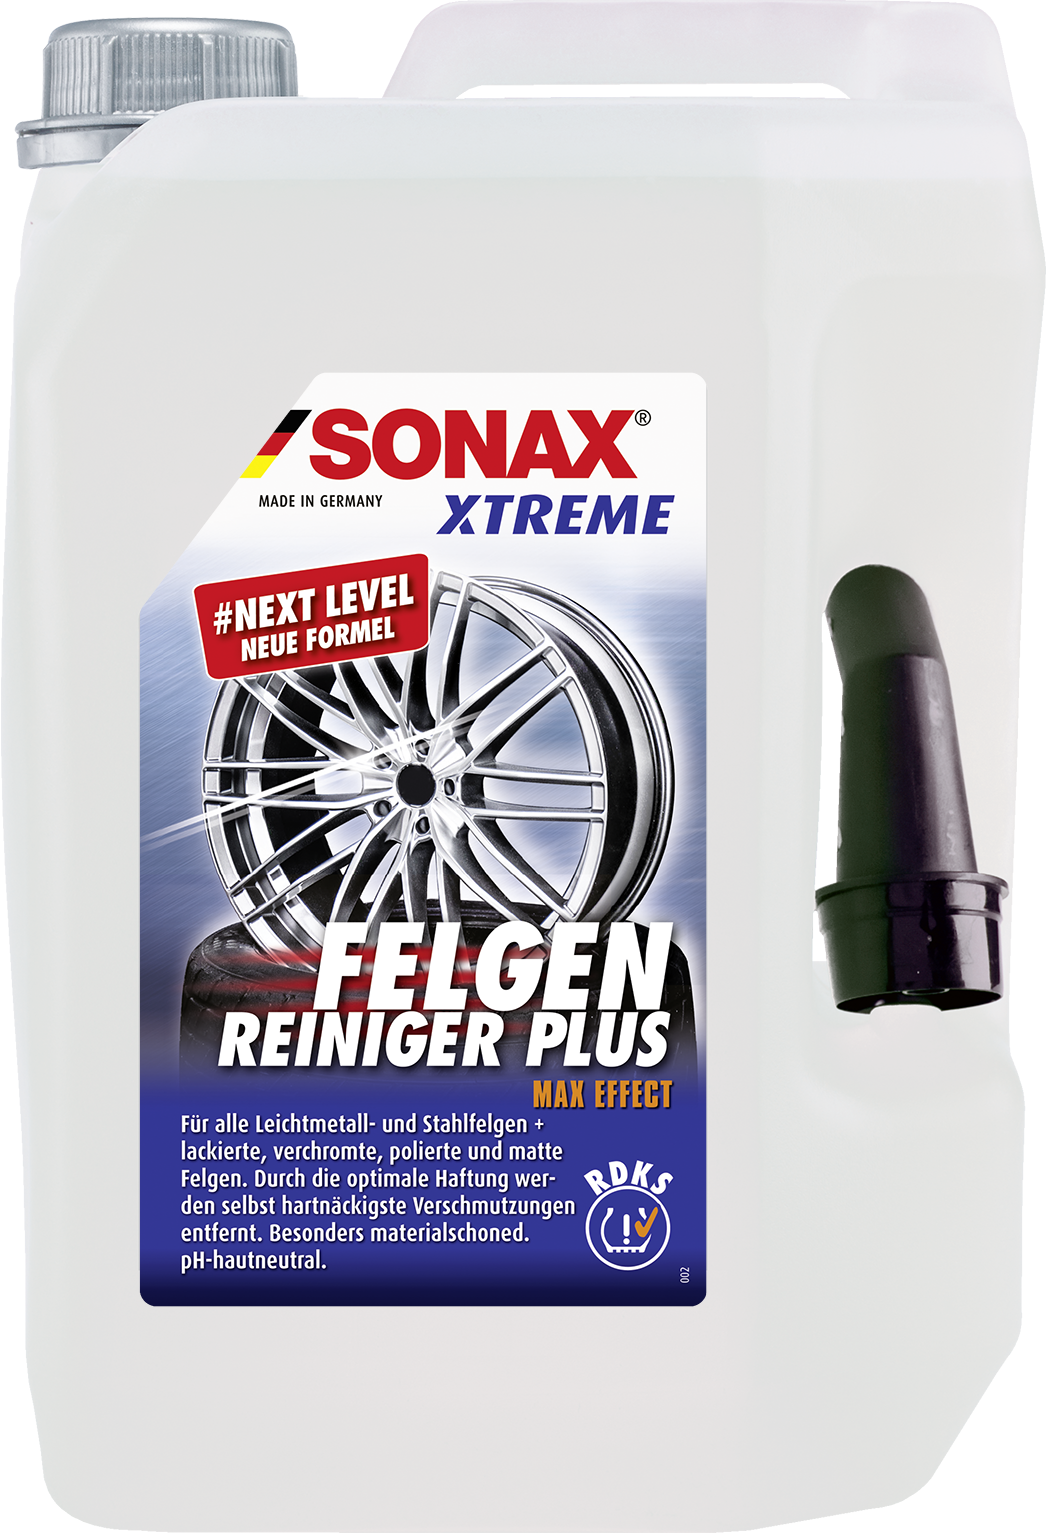 SONAX XTREME FelgenReiniger PLUS 5 L, Felgen / Reifen / Gummi, Reinigung  & Pflege, Rund ums Fahrzeug